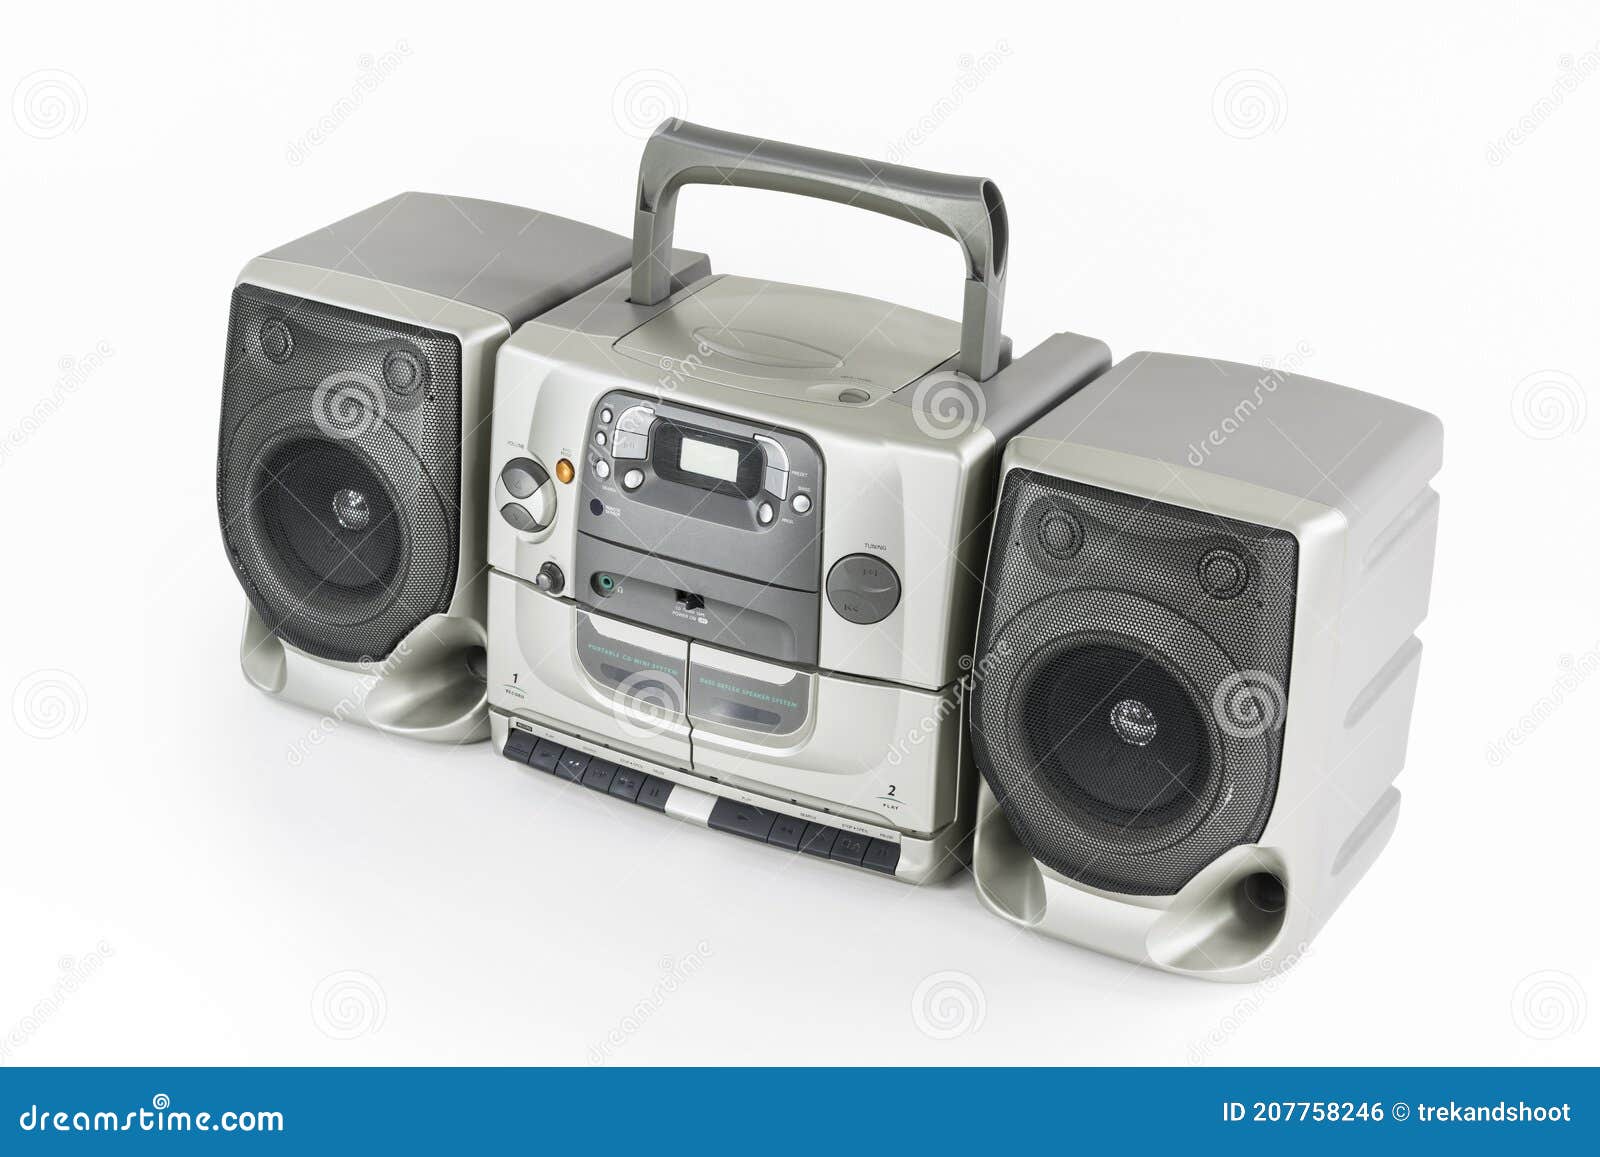 Boom Box Reproductor De Cd Radio Cassette Portátil Foto de archivo - Imagen  de objeto, auge: 207758246